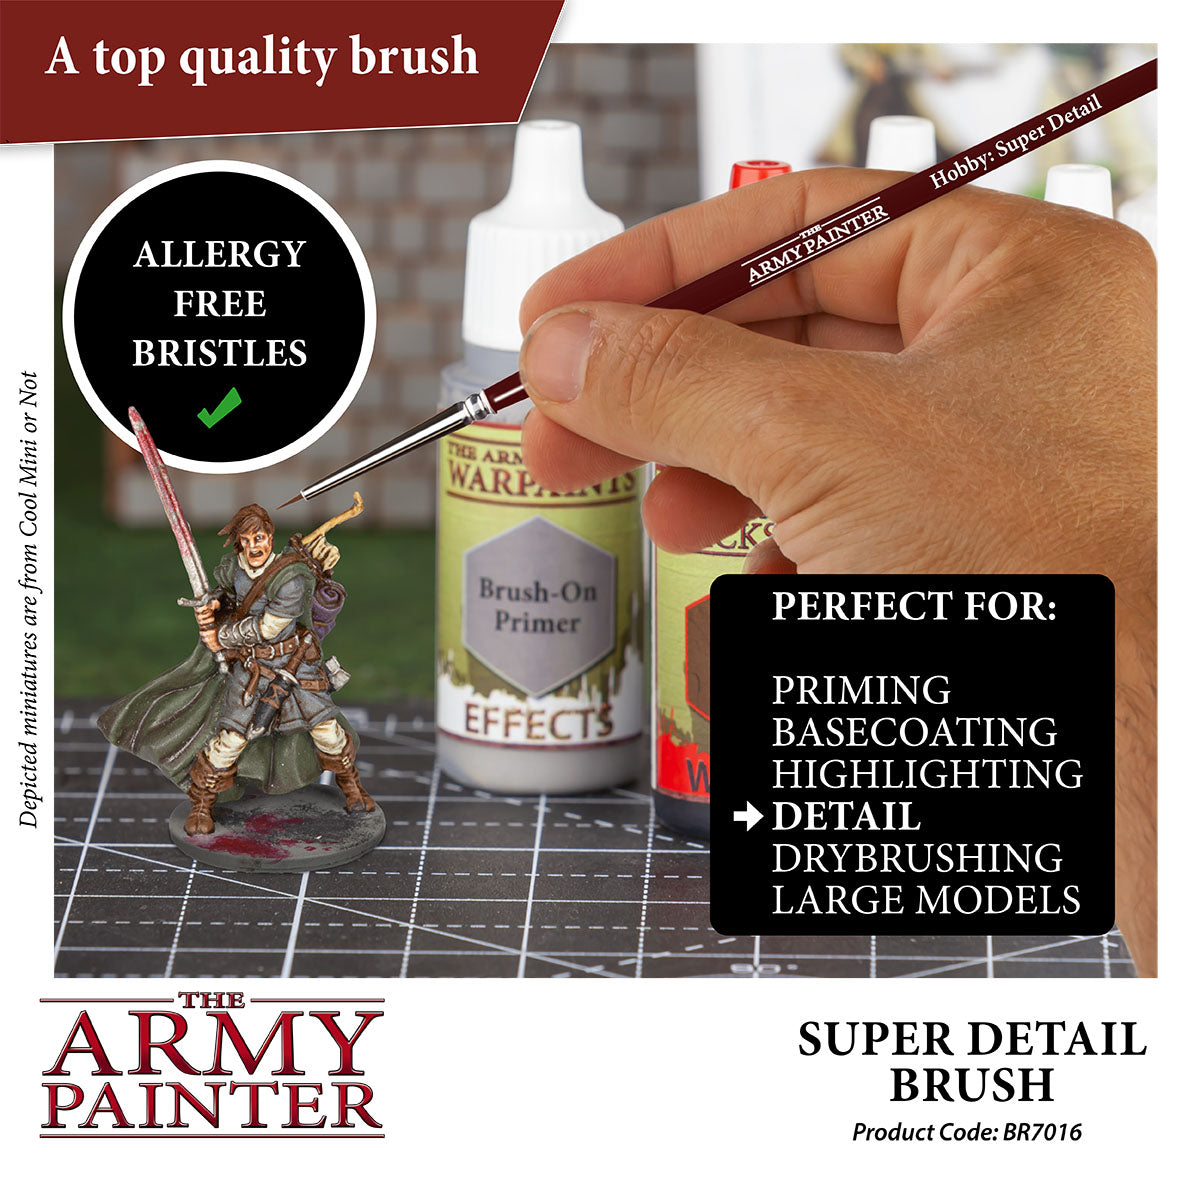 Scalpel - Hobby Knife - Outil de précision Army Painter - Boutique BCD JEUX